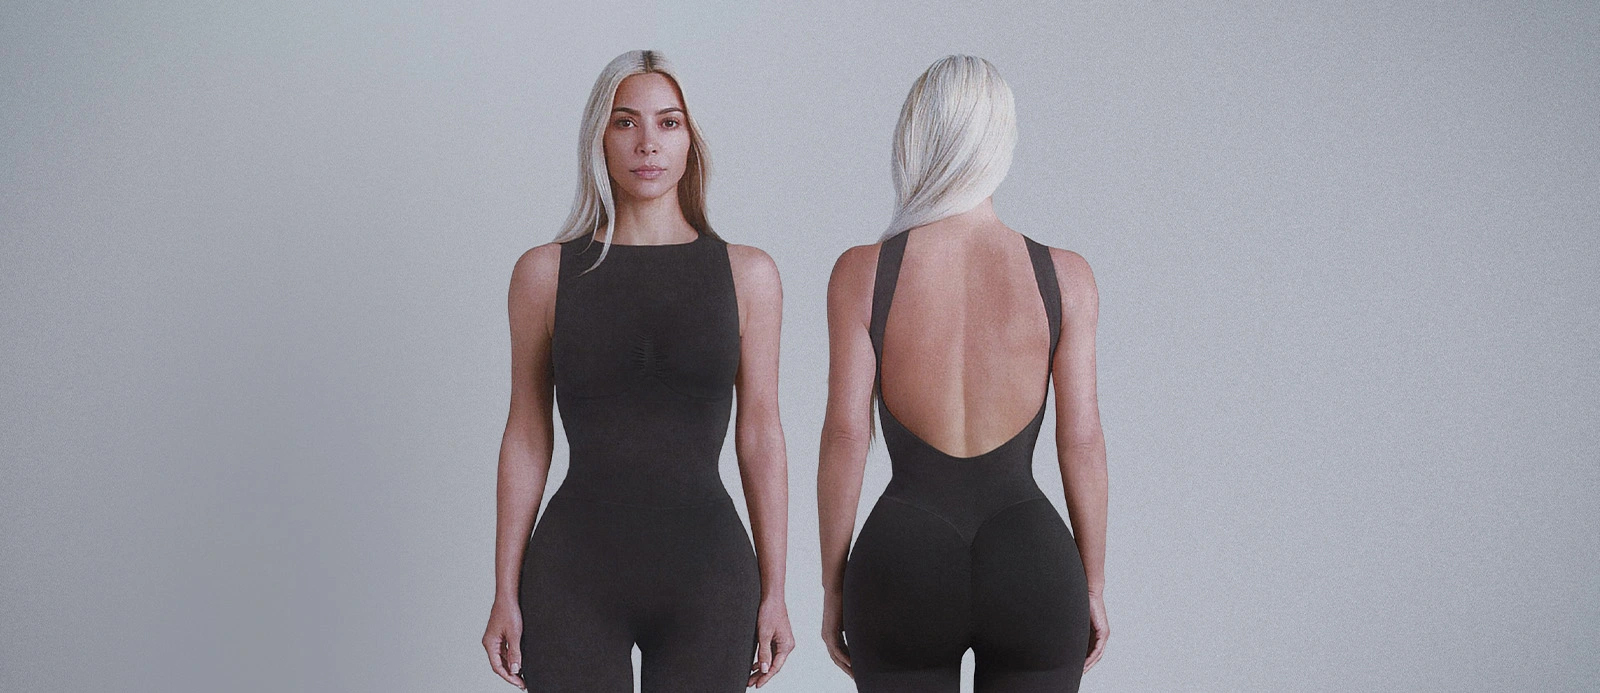 Kim Kardashian's SKIMs shapewear credited with saving fan's life